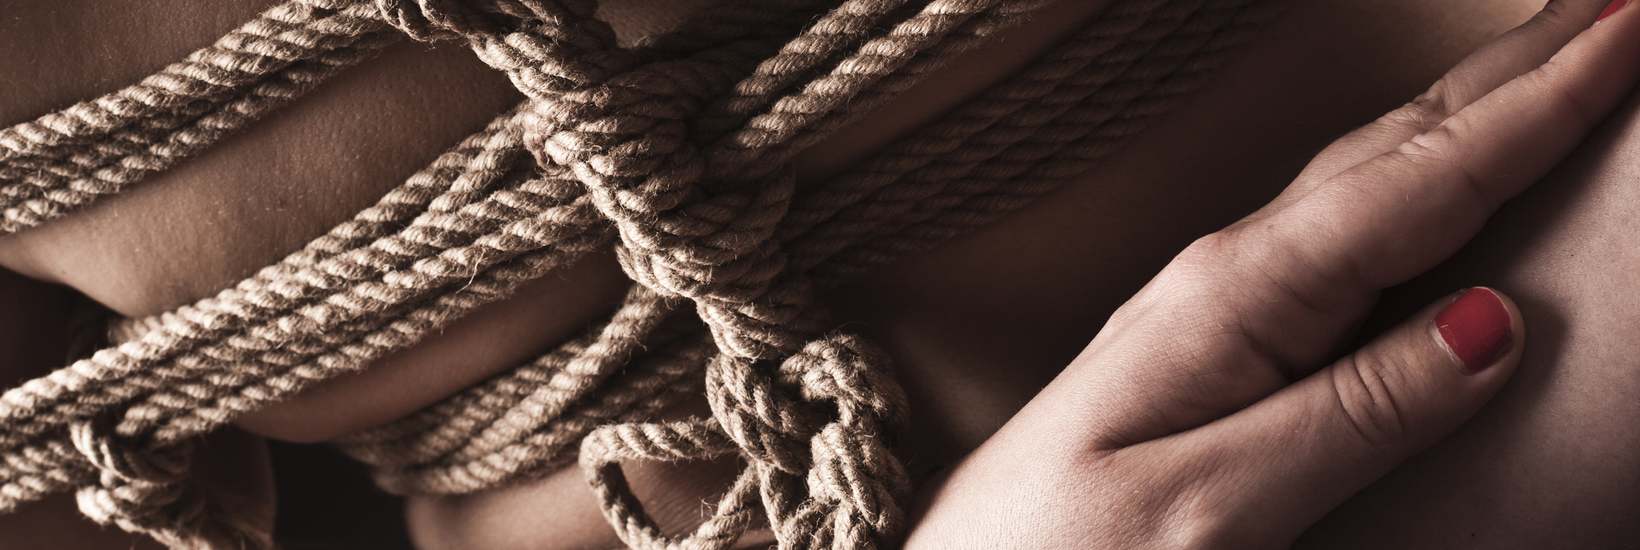 Bondage ist die Kunst, die Bewegungsfreiheit erotisch einzuschränken. Oft kommen Seile oder Handschellen zum Einsatz.